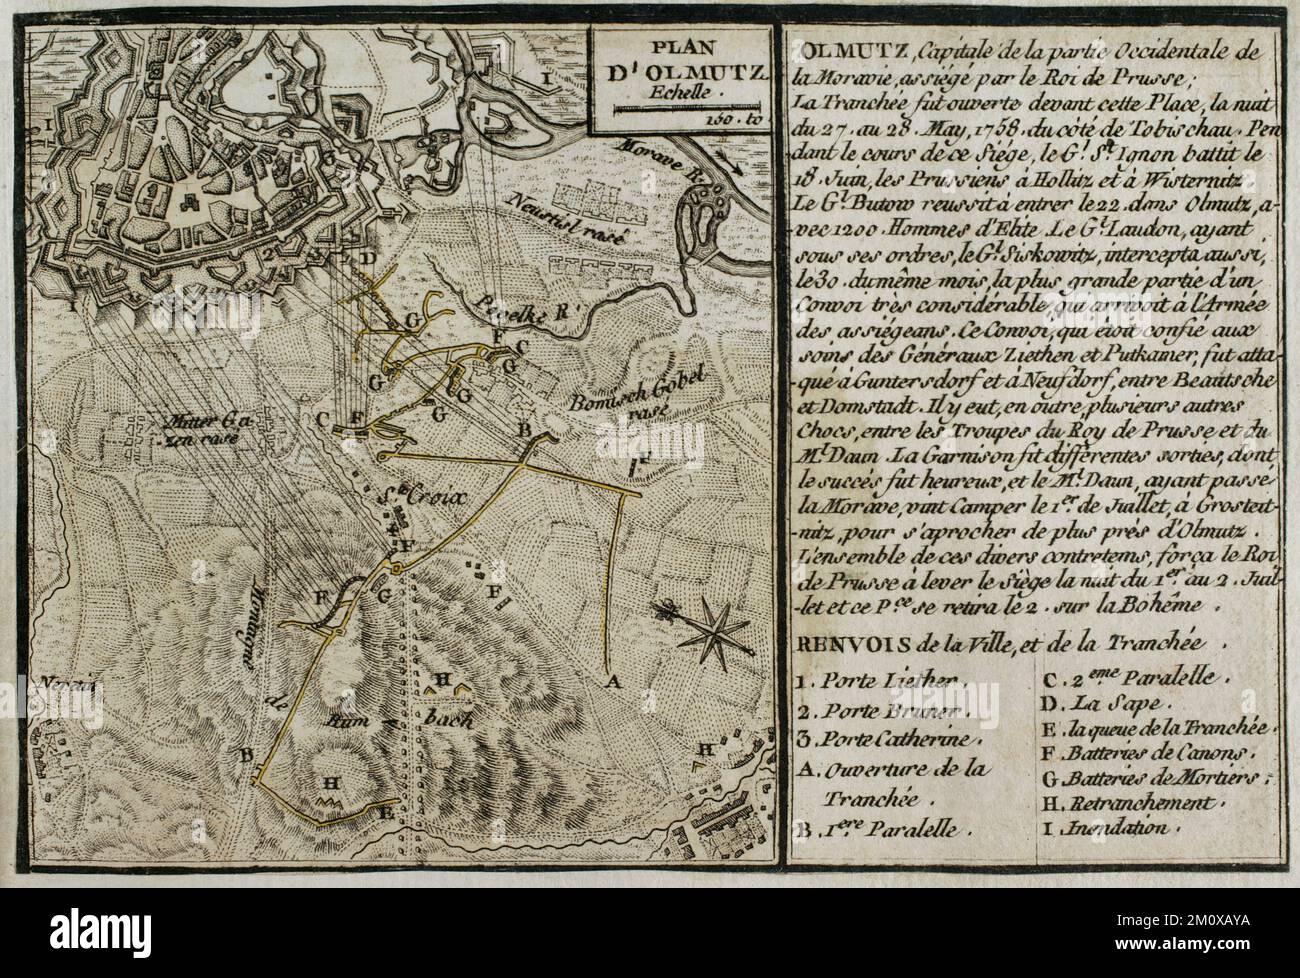 Guerra dei sette anni (1756-1763). Mappa dell'assedio di Olmutz (27th maggio-1st luglio 1758). L'esercito prussiano, comandato da Federico il Grande, assediò la città di Olmutz in Moravia, sotto il controllo degli Asburgo austriaci. La resistenza dell'esercito austriaco, guidato da Ernst Dietrich Marschall, costrinse i prussiani ad abbandonare l'assedio e a ritirarsi dalla Moravia. Pubblicato nel 1765 dal cartografo Jean de Beaurain (1696-1771) come illustrazione della sua Grande carta della Germania, con gli eventi che si sono verificati durante la Guerra dei sette anni. Incisione. Edizione francese, 1765. Biblioteca storica militare di Barc Foto Stock